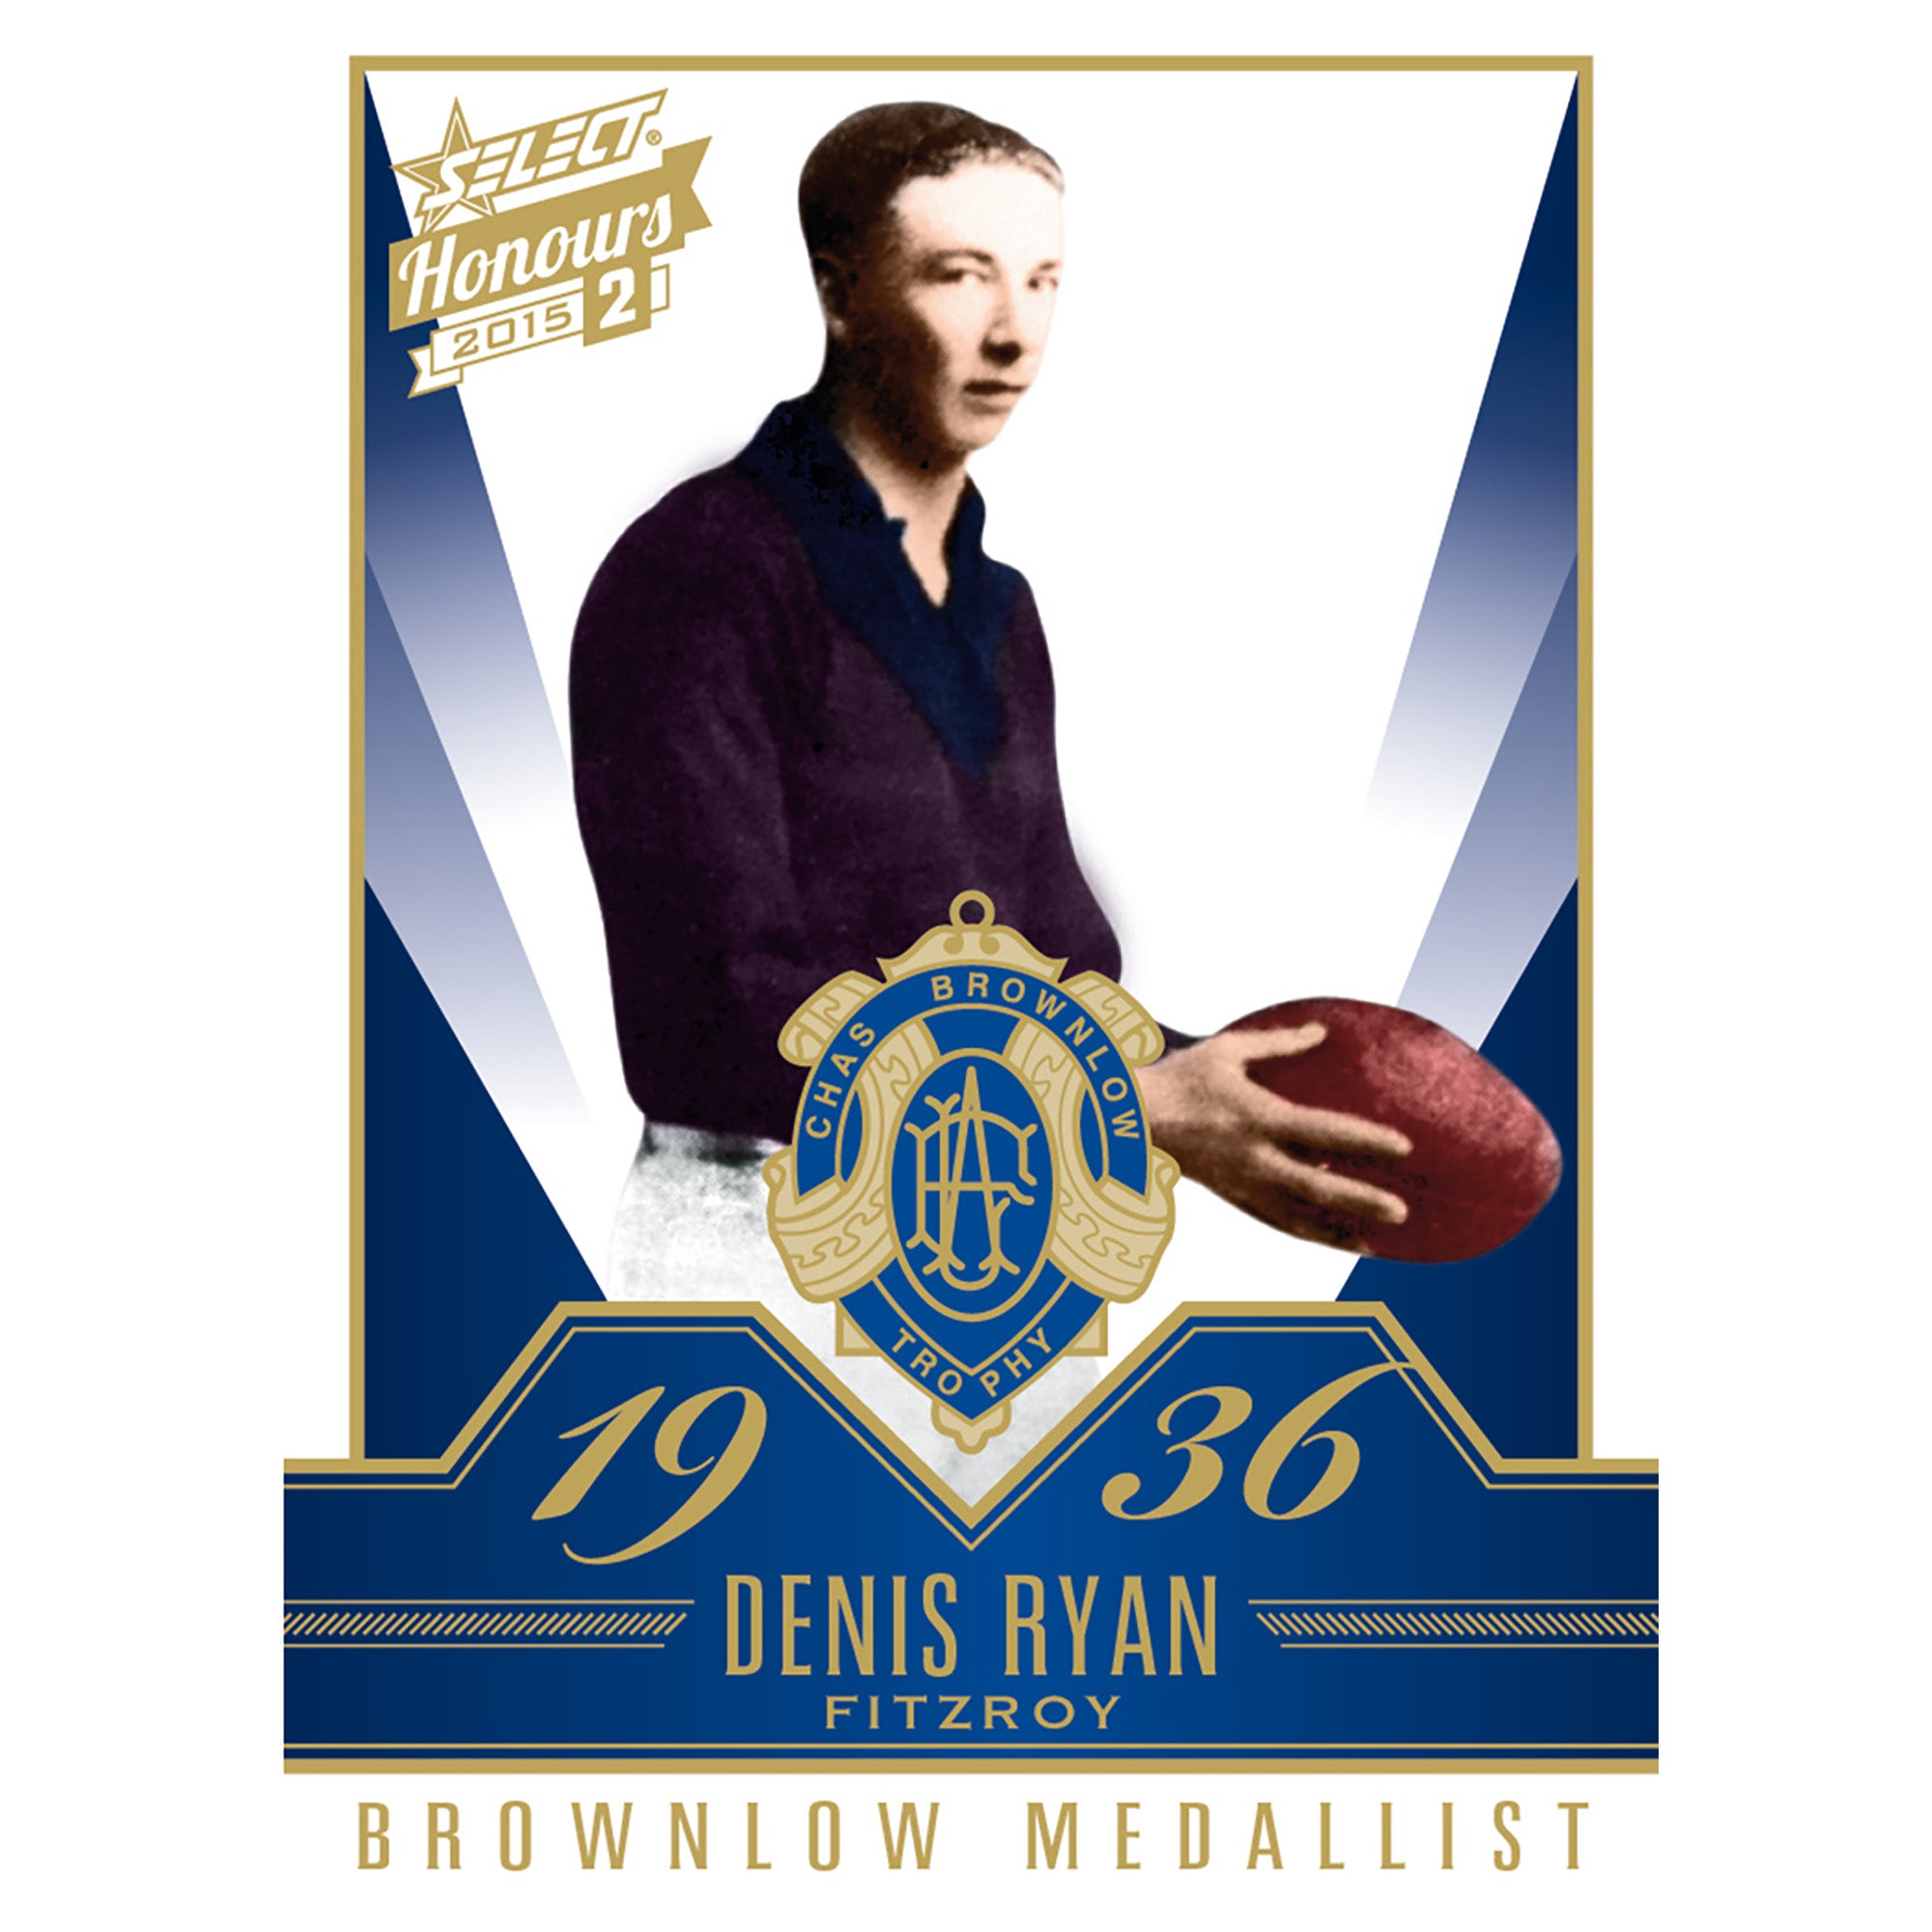 AFL Select Australia 2015 Select Honours 2 - Brownlow Gallery Denis Ryan Fitzroy BG61